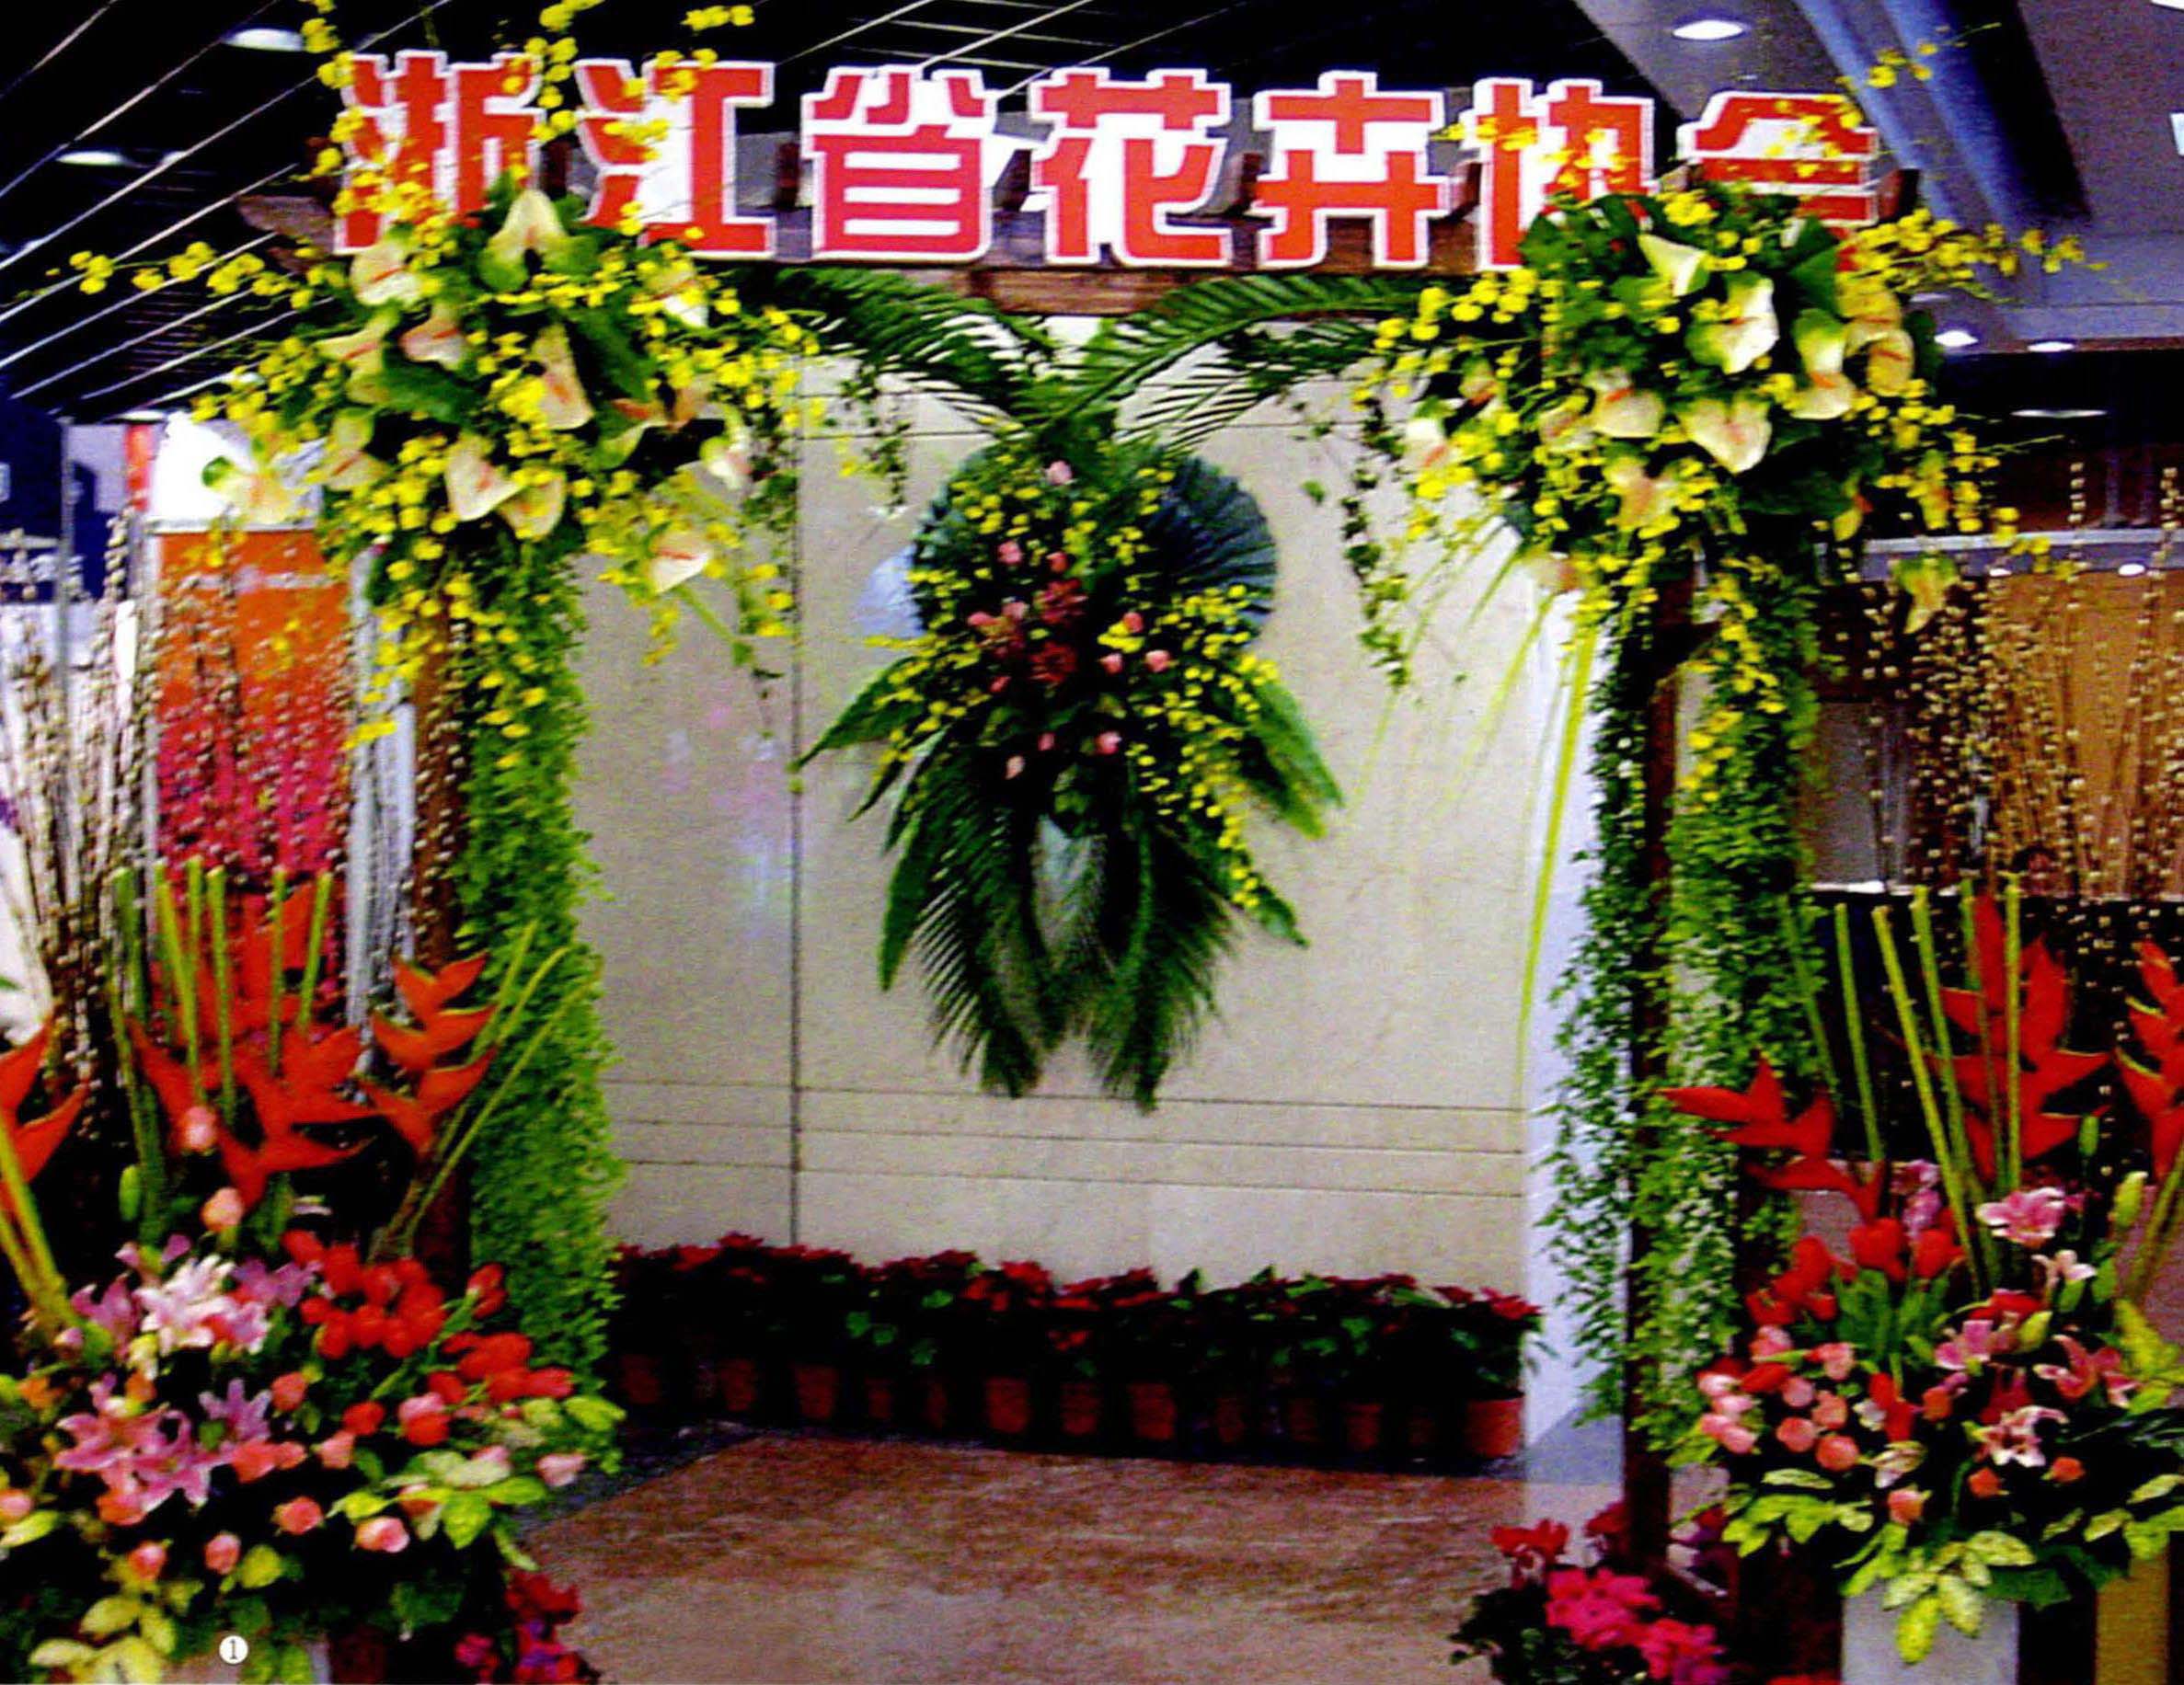 上海优农博览会花卉区入口插花